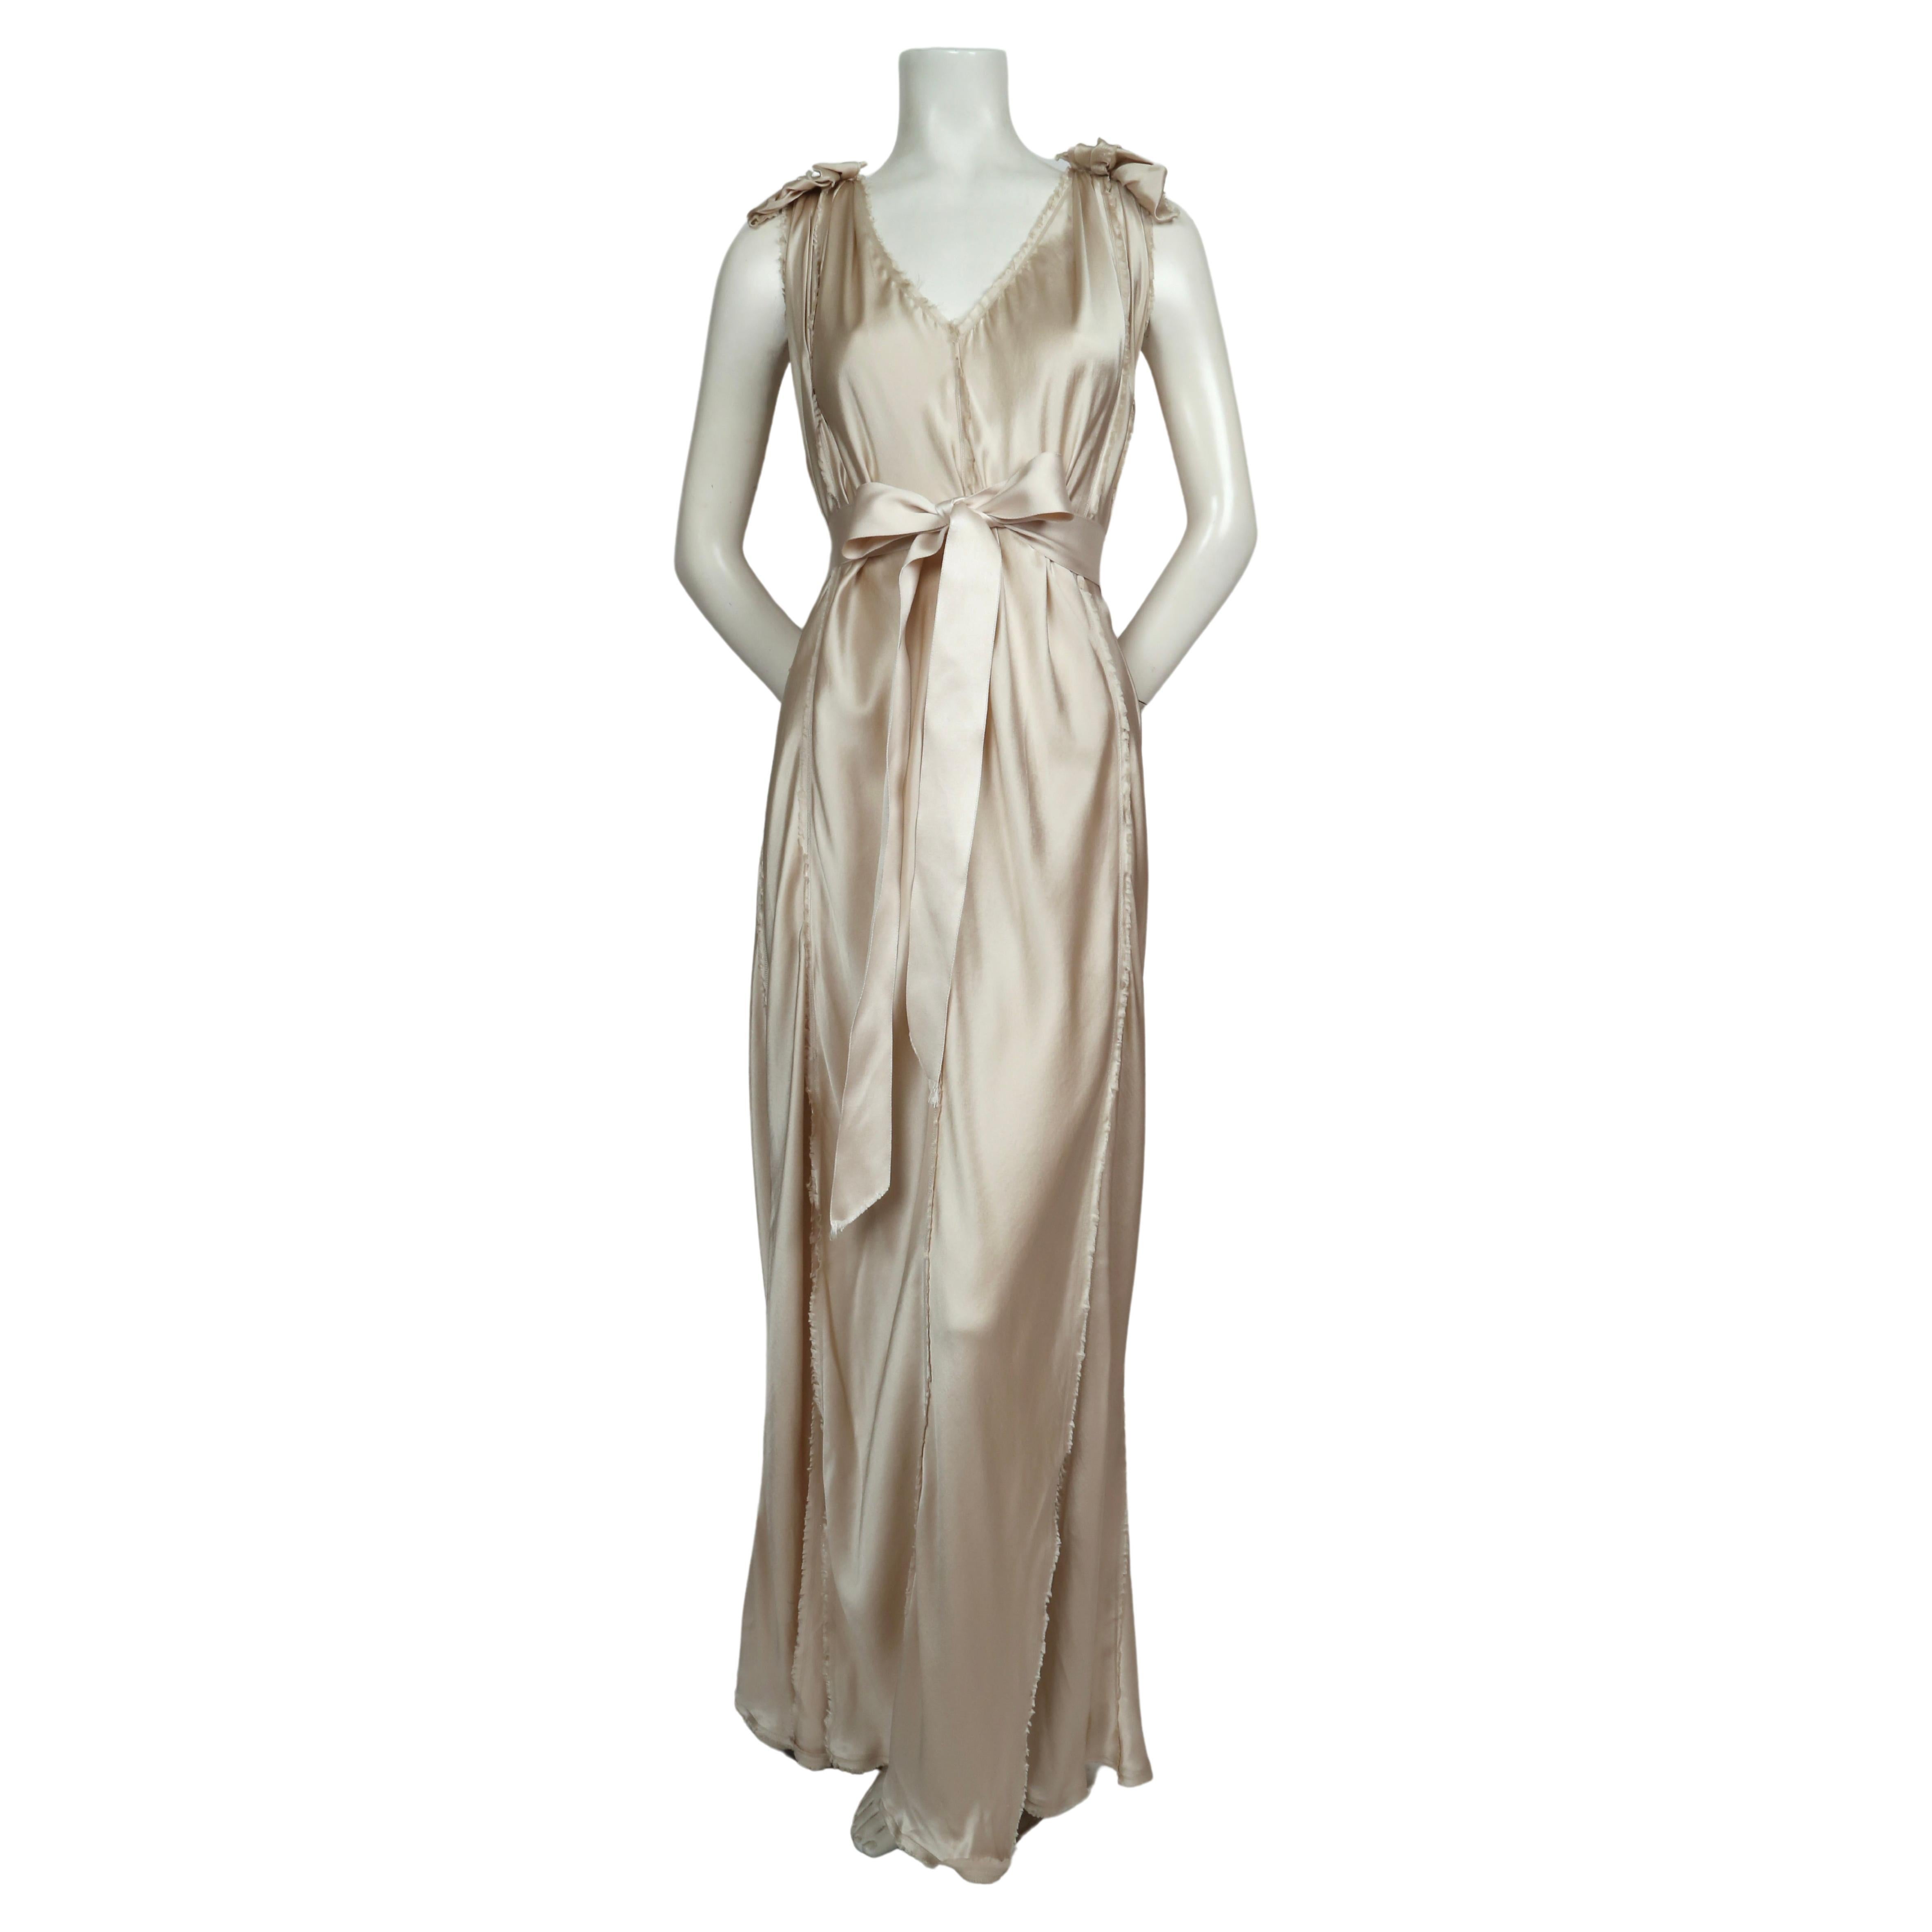 Mariage de style grec en soie champagne  robe conçue par Alber Elbaz pour Lanvin datant de 2008. Taille française 36, mais il y a une certaine flexibilité dans la taille en raison de la coupe en biais des panneaux.  Bords intentionnellement